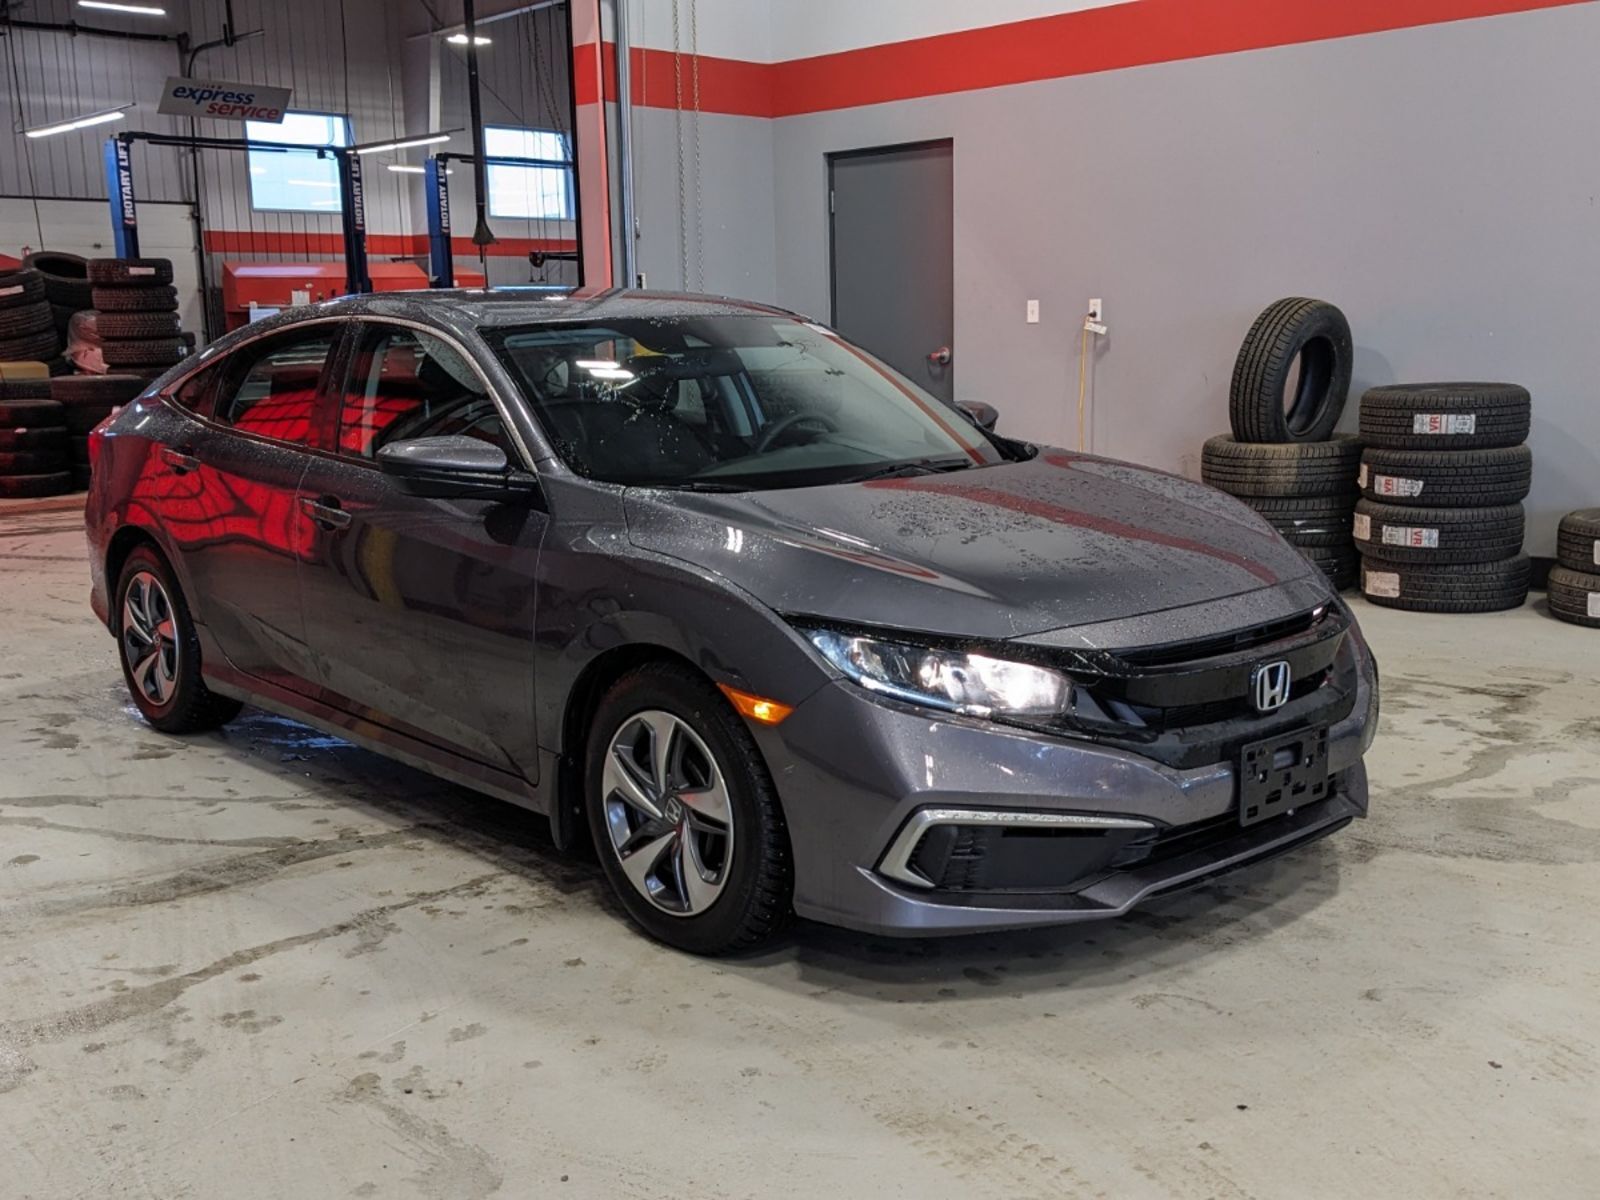 2020 Honda Civic Sedan LX - Heated seats, back-up camera, Honda Sensing